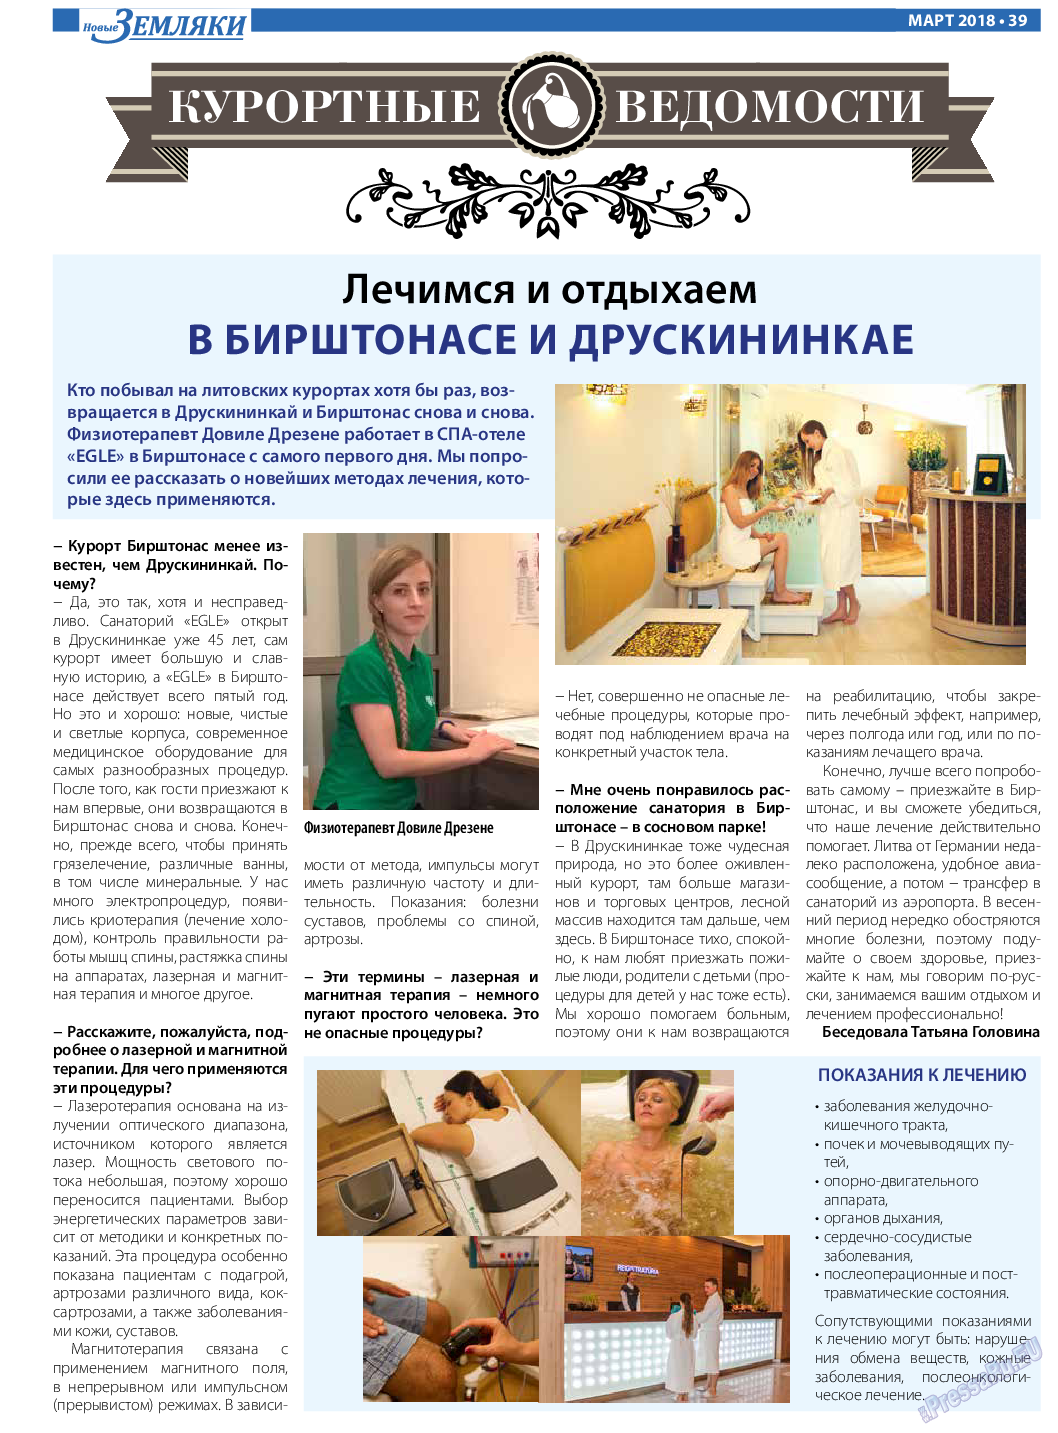 Новые Земляки, газета. 2018 №3 стр.39